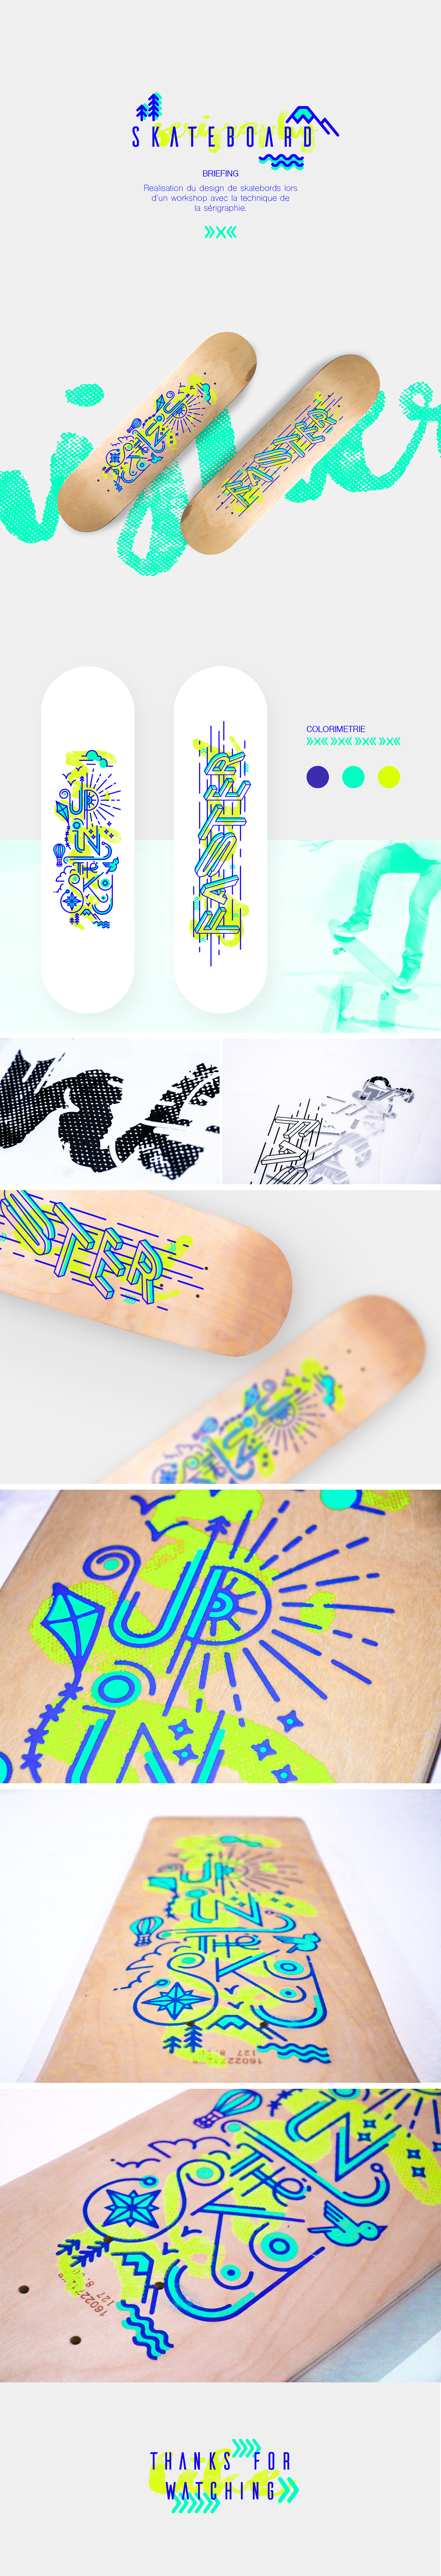 skateboard Workshop Serigraphy up SKY faster colors print saturation